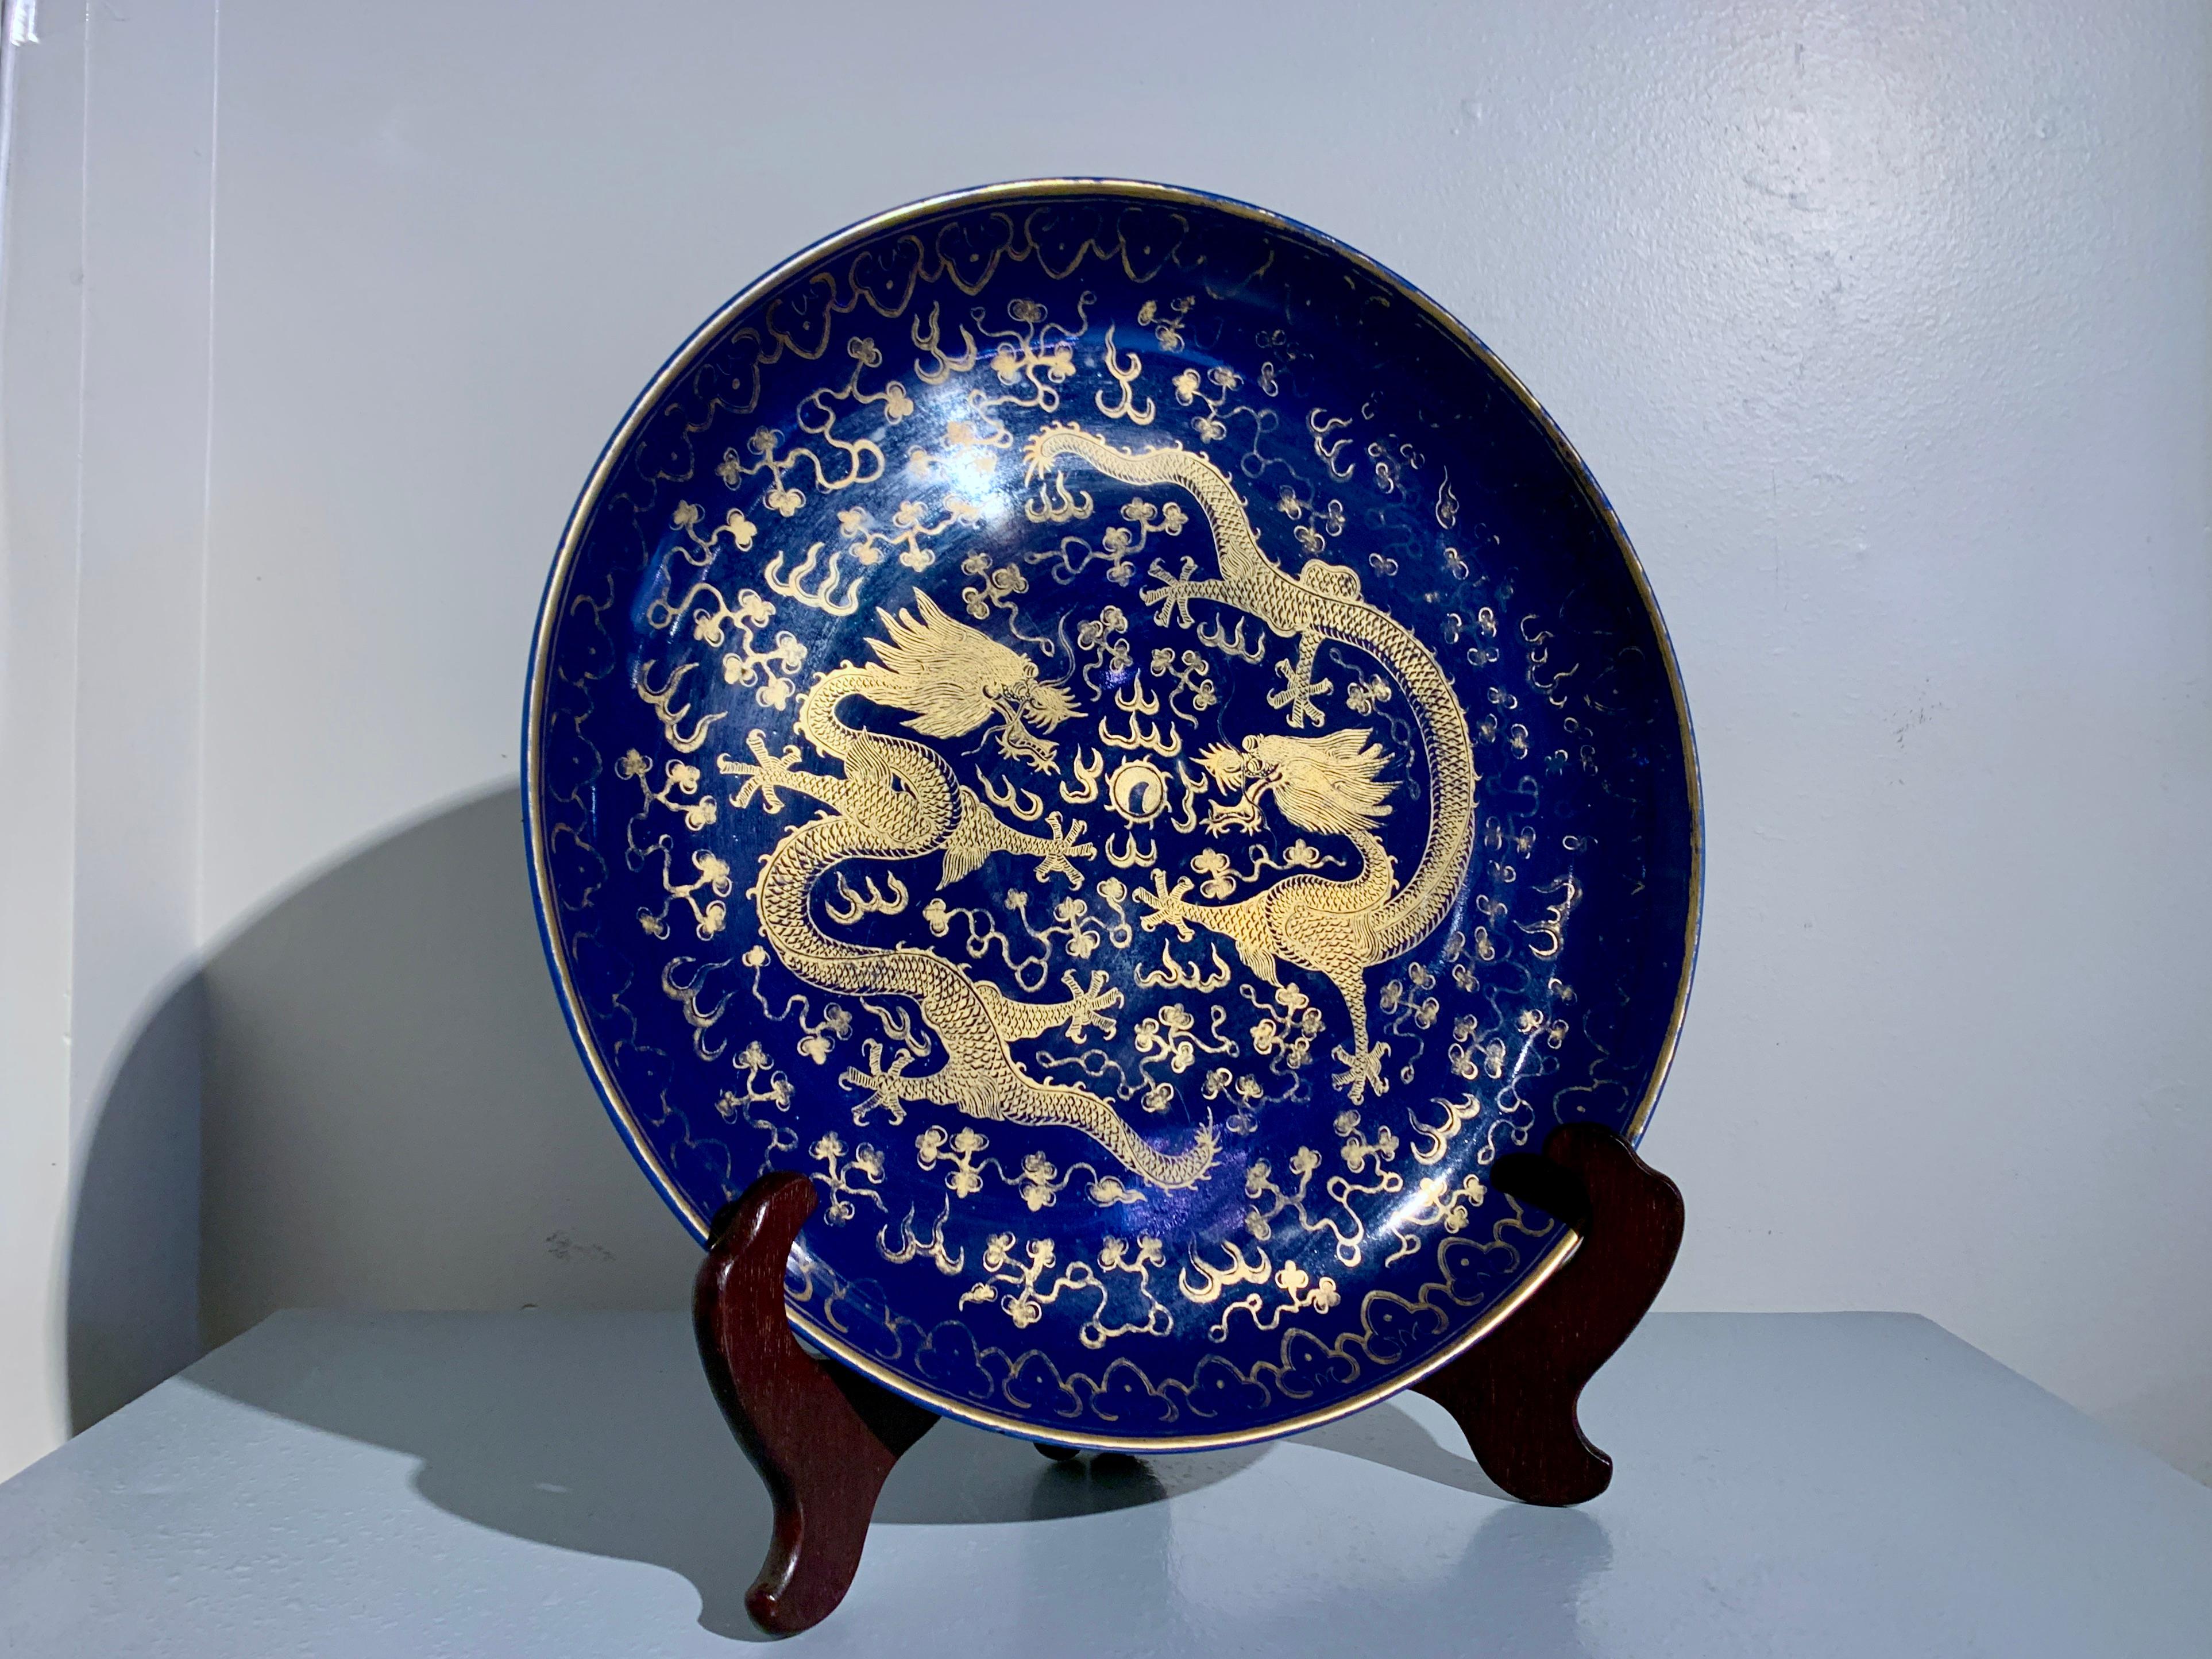 Ein prächtiges chinesisches Ladegerät aus pulverblau glasiertem Porzellan mit gemaltem Golddekor, späte Qing-Dynastie, um 1900, China.

Das große und beeindruckende chinesische Porzellanladegerät ist in einem satten und tiefen Kobaltblau glasiert,